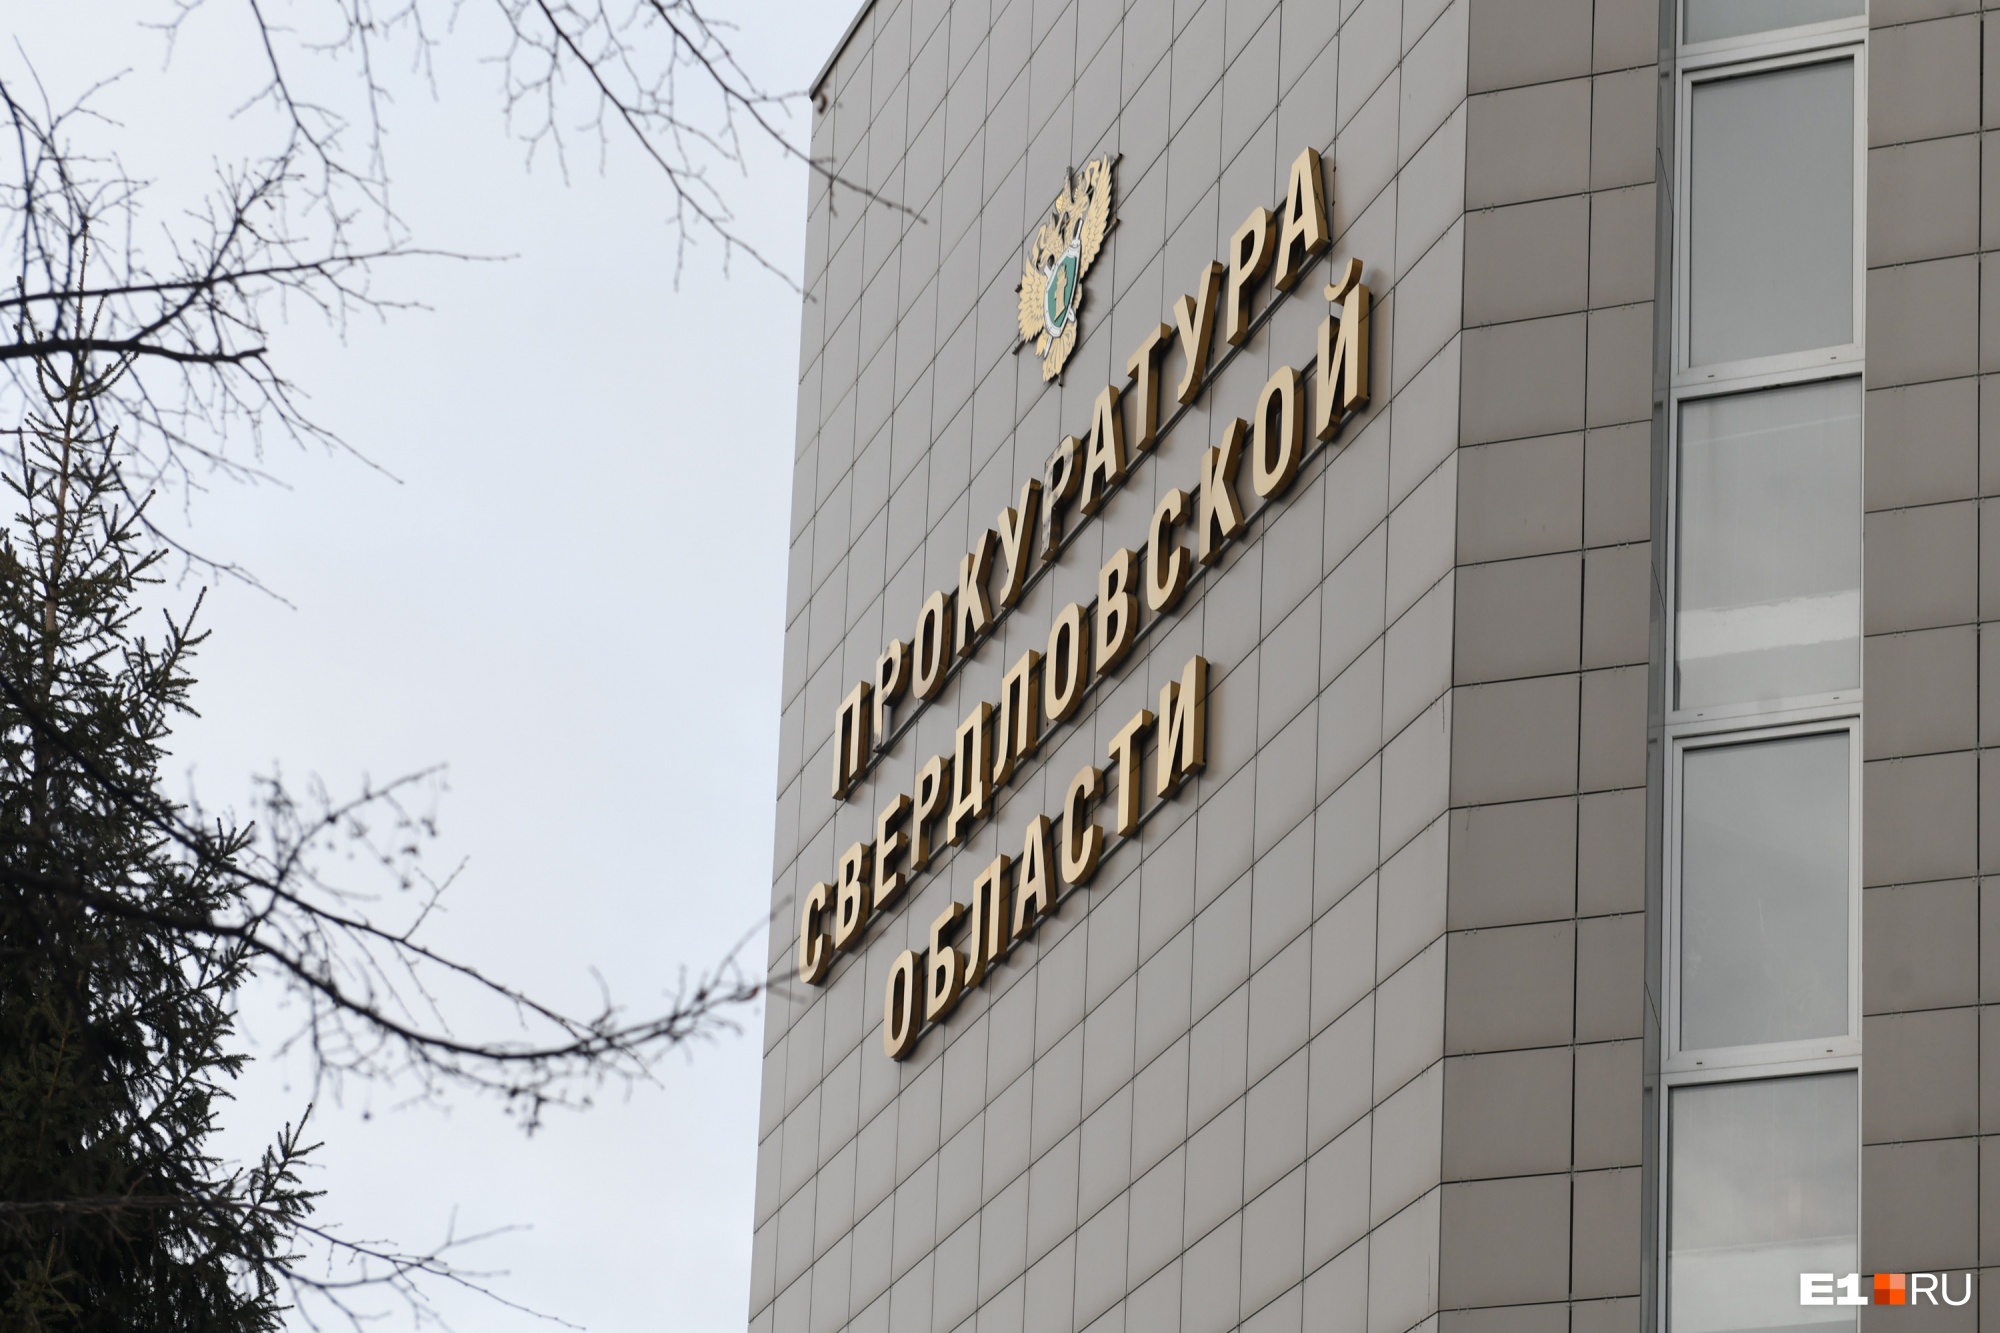 Прокуратура обнаружила коррупцию на десятки миллионов рублей в работе администрации Среднеуральска